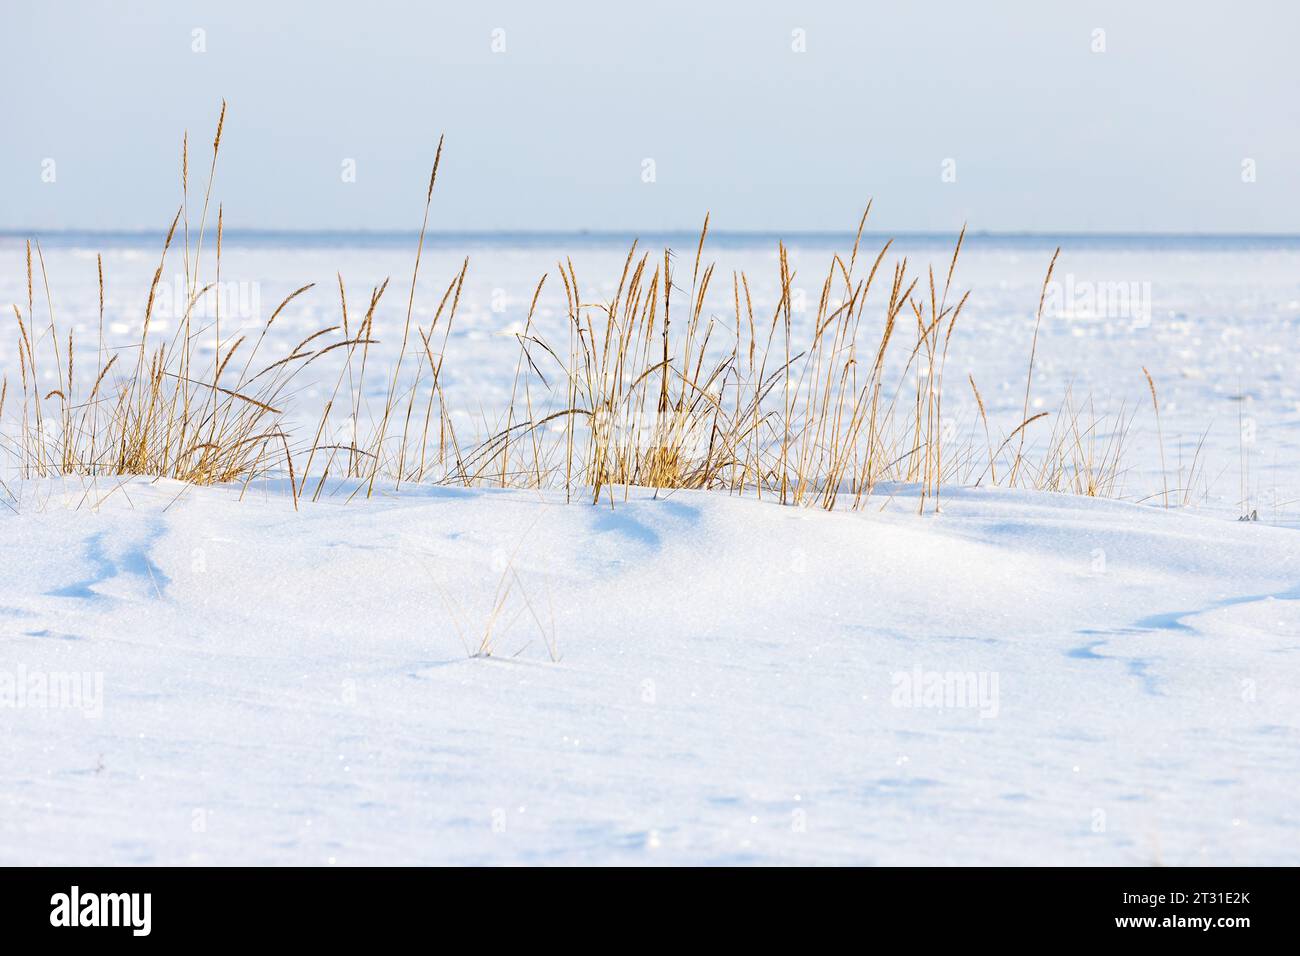 Paesaggio balneare invernale con erba costiera secca nella neve bianca in una giornata di sole, foto di sfondo naturale scattate sulla costa del Mar Baltico ghiacciato Foto Stock